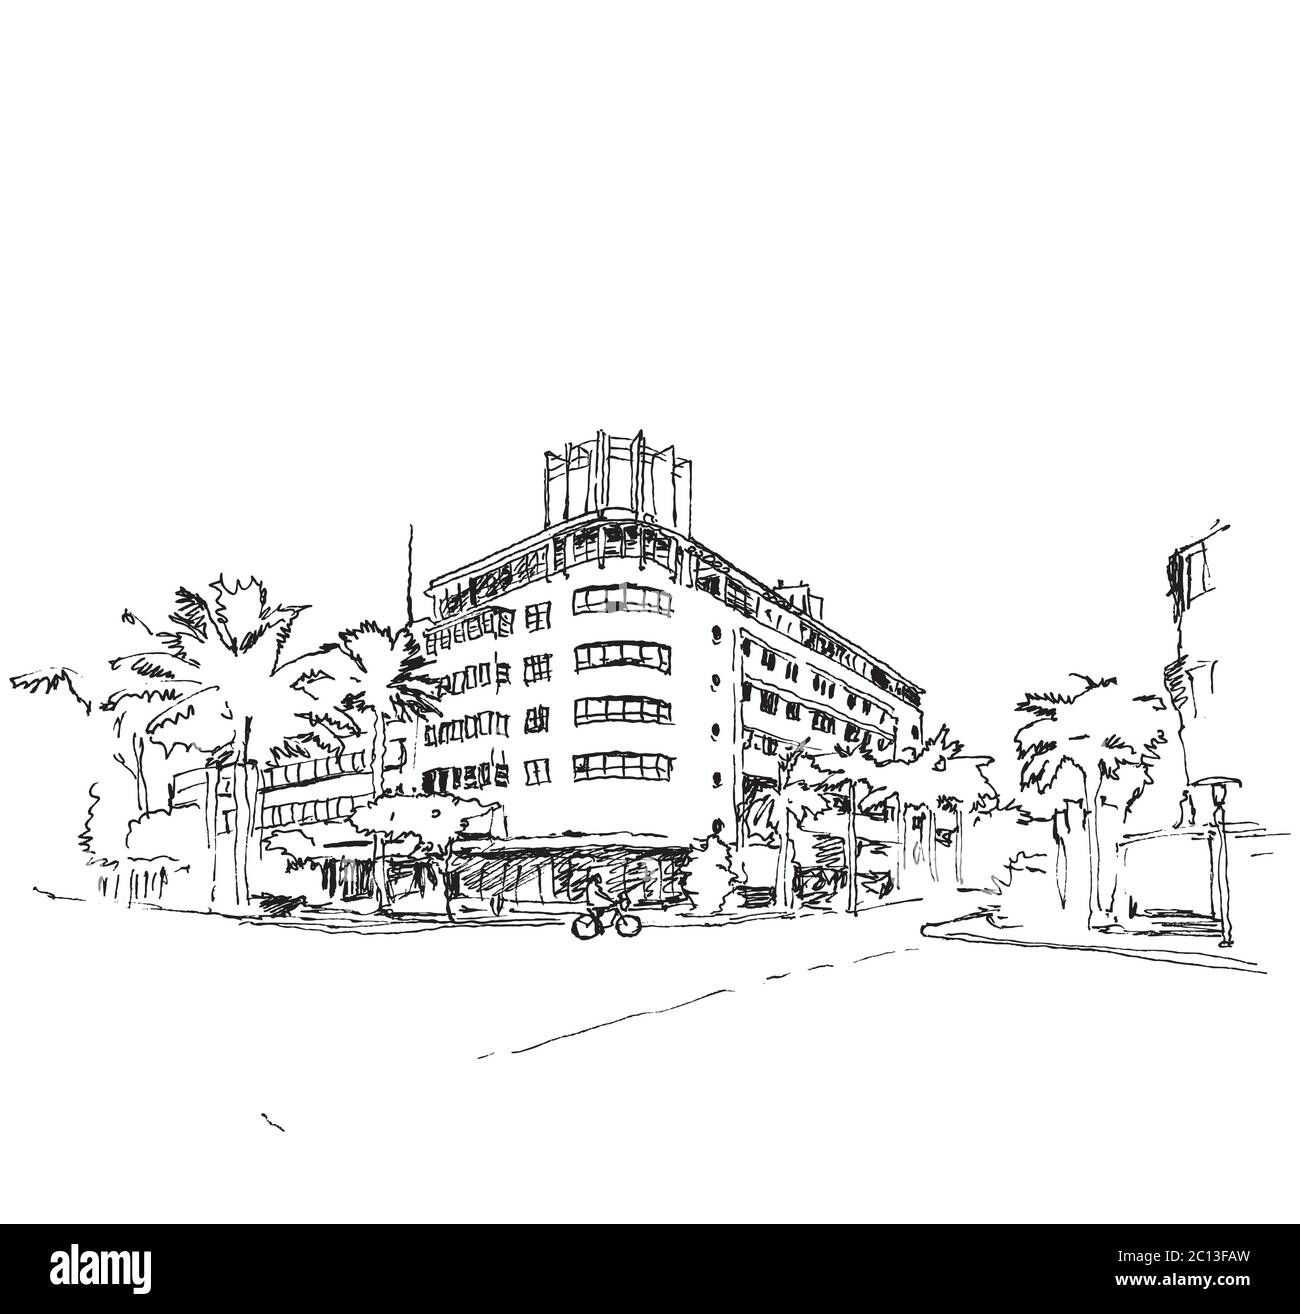 Zeichnung Skizzendarstellung einer Ecke im Ocean Drive in Miami, Florida, USA Stock Vektor